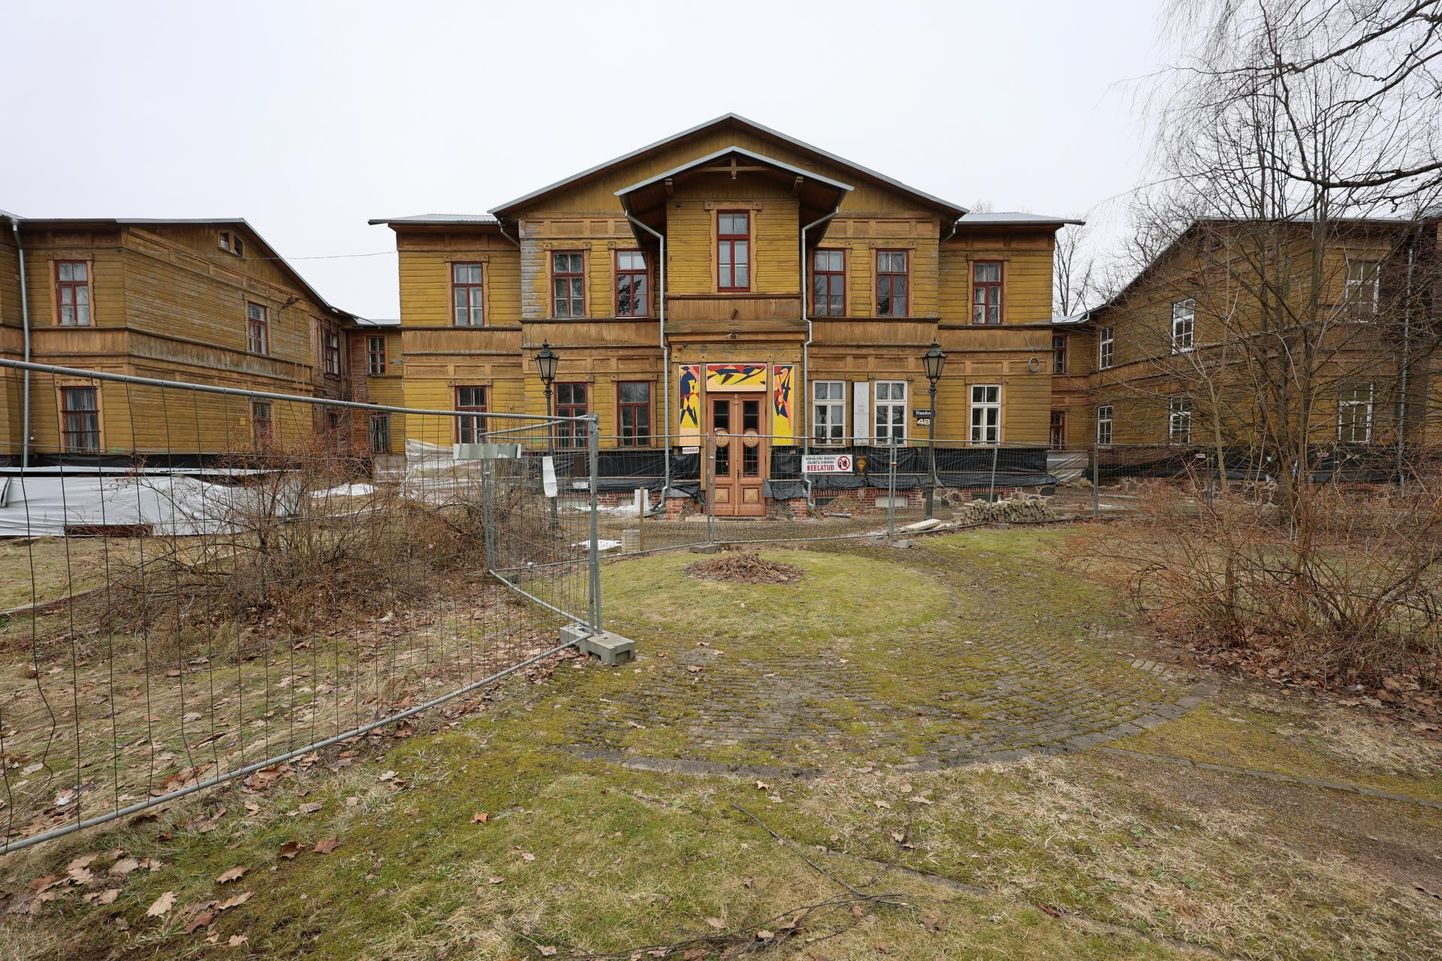 Endine Tartu psühhiaatriahaigla aadressil Staadioni 83 on Eesti suurim puithoone, kuhu Vallikraavi Kinnisvara rajab 38 korterit. Praeguse lepingu järgi on ettevõttel maja renoveerimiseks aega umbes kaks aastat.